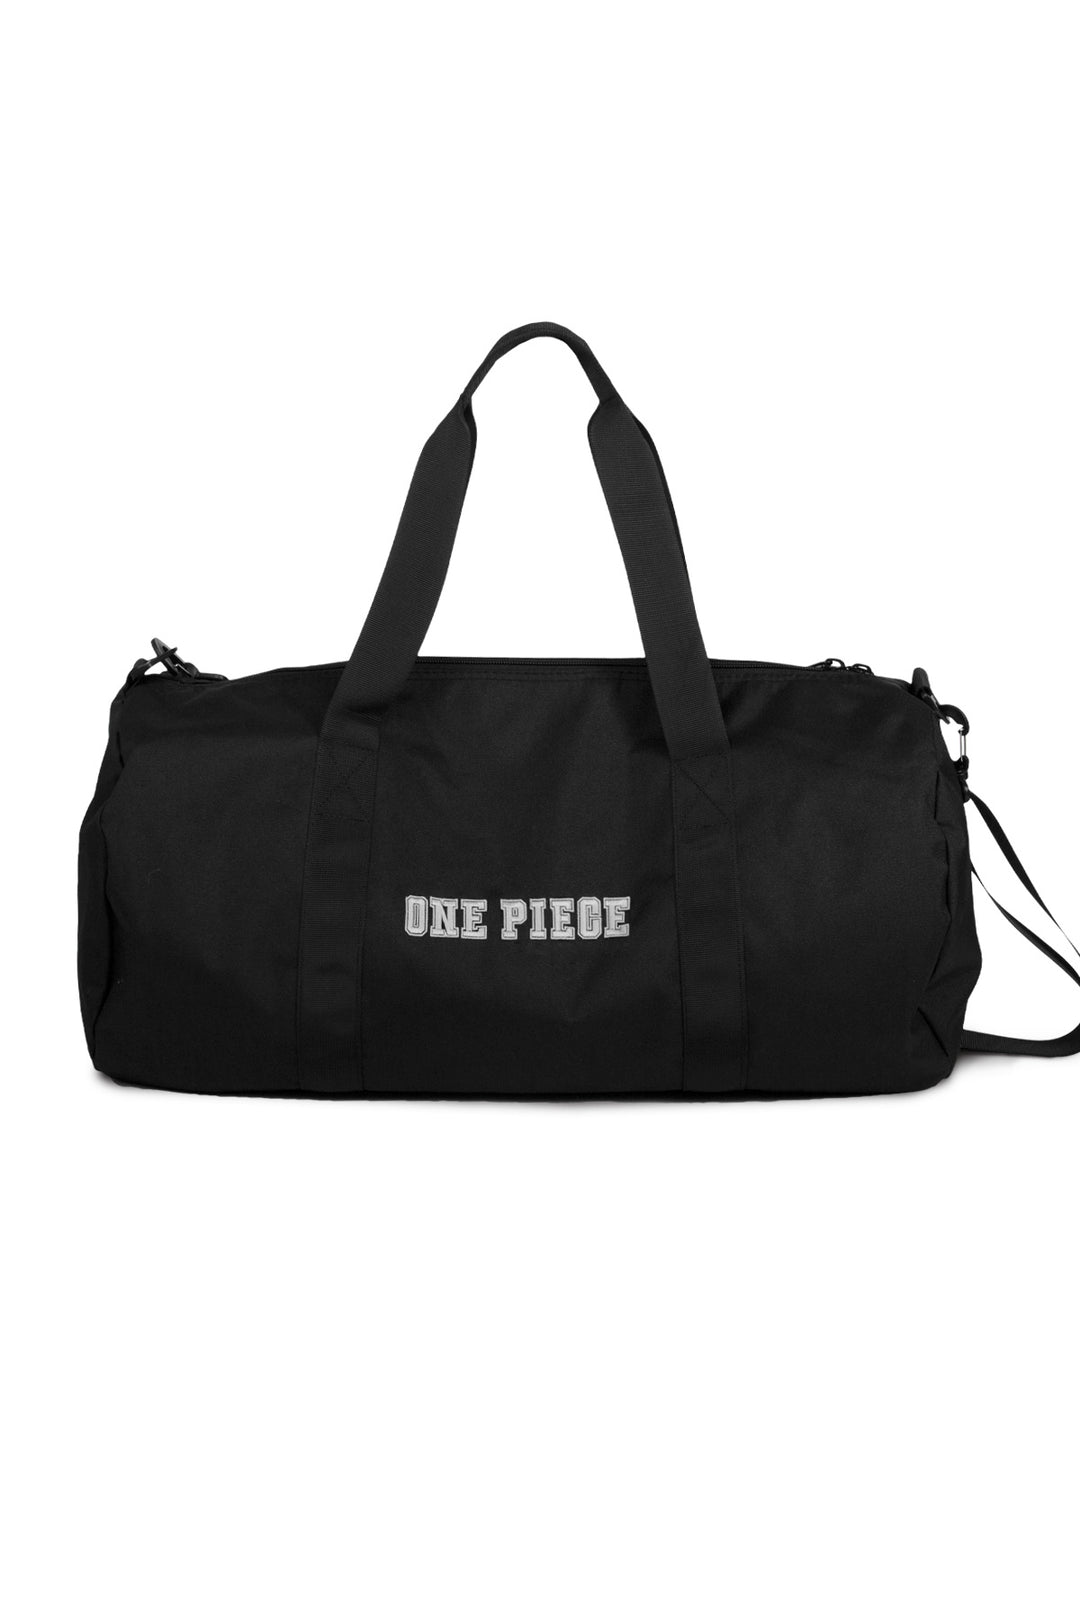 One Piece Duffel Bag - Back 